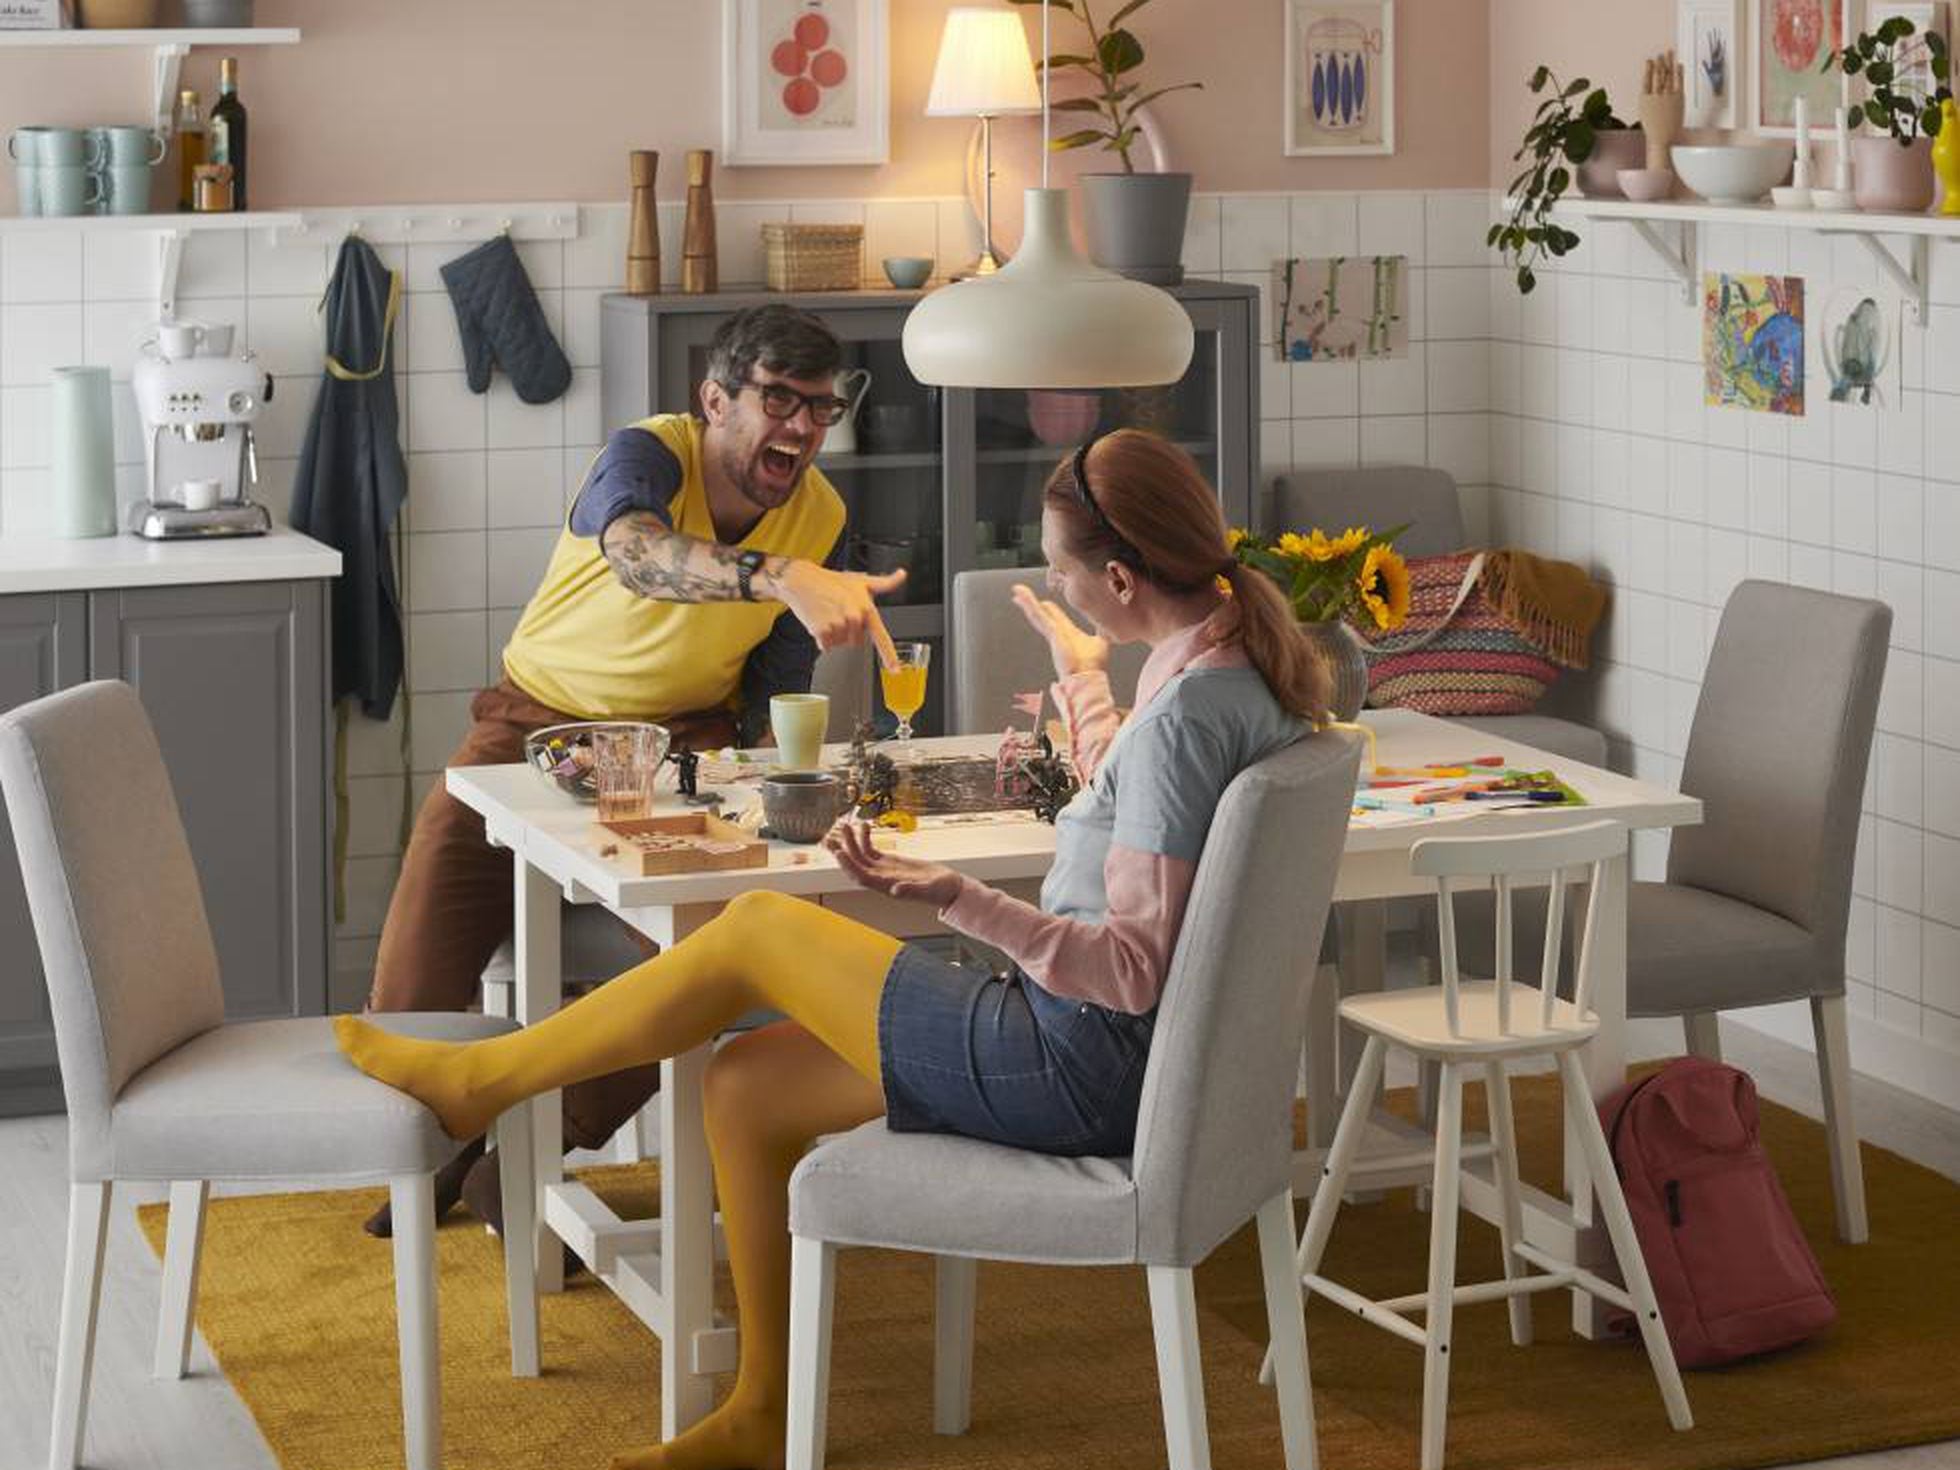 Más baratos, reciclables y polivalentes: estos son los muebles de Ikea para un otoño semiconfinado | Design | EL PAÍS